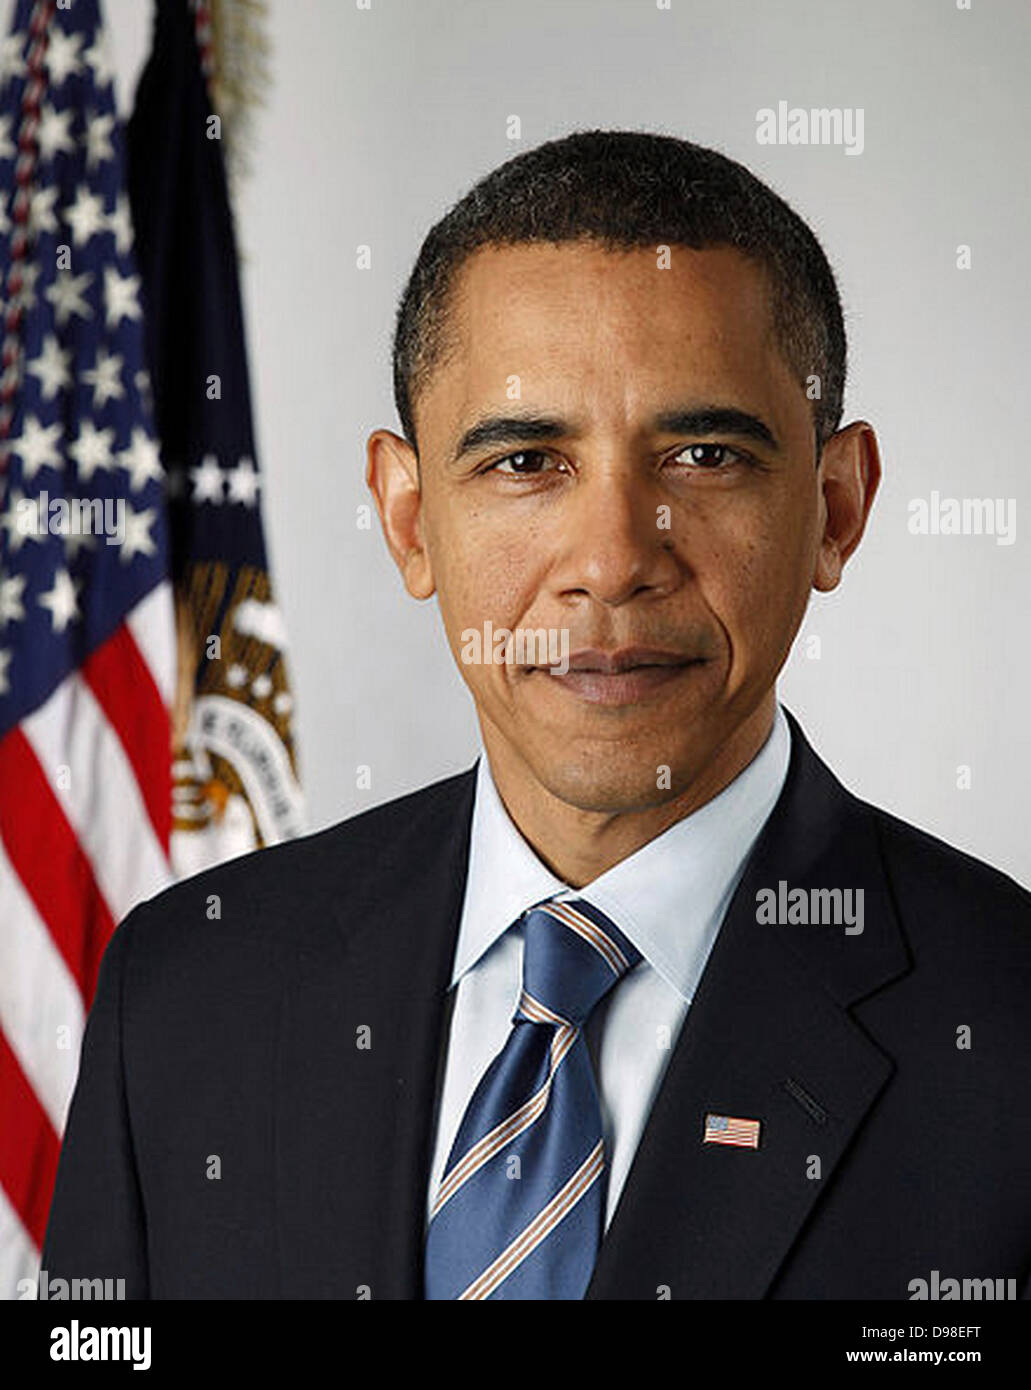 Offizielles Porträt von US-Präsident Barack Obama im Jahr 2010 Stockfoto